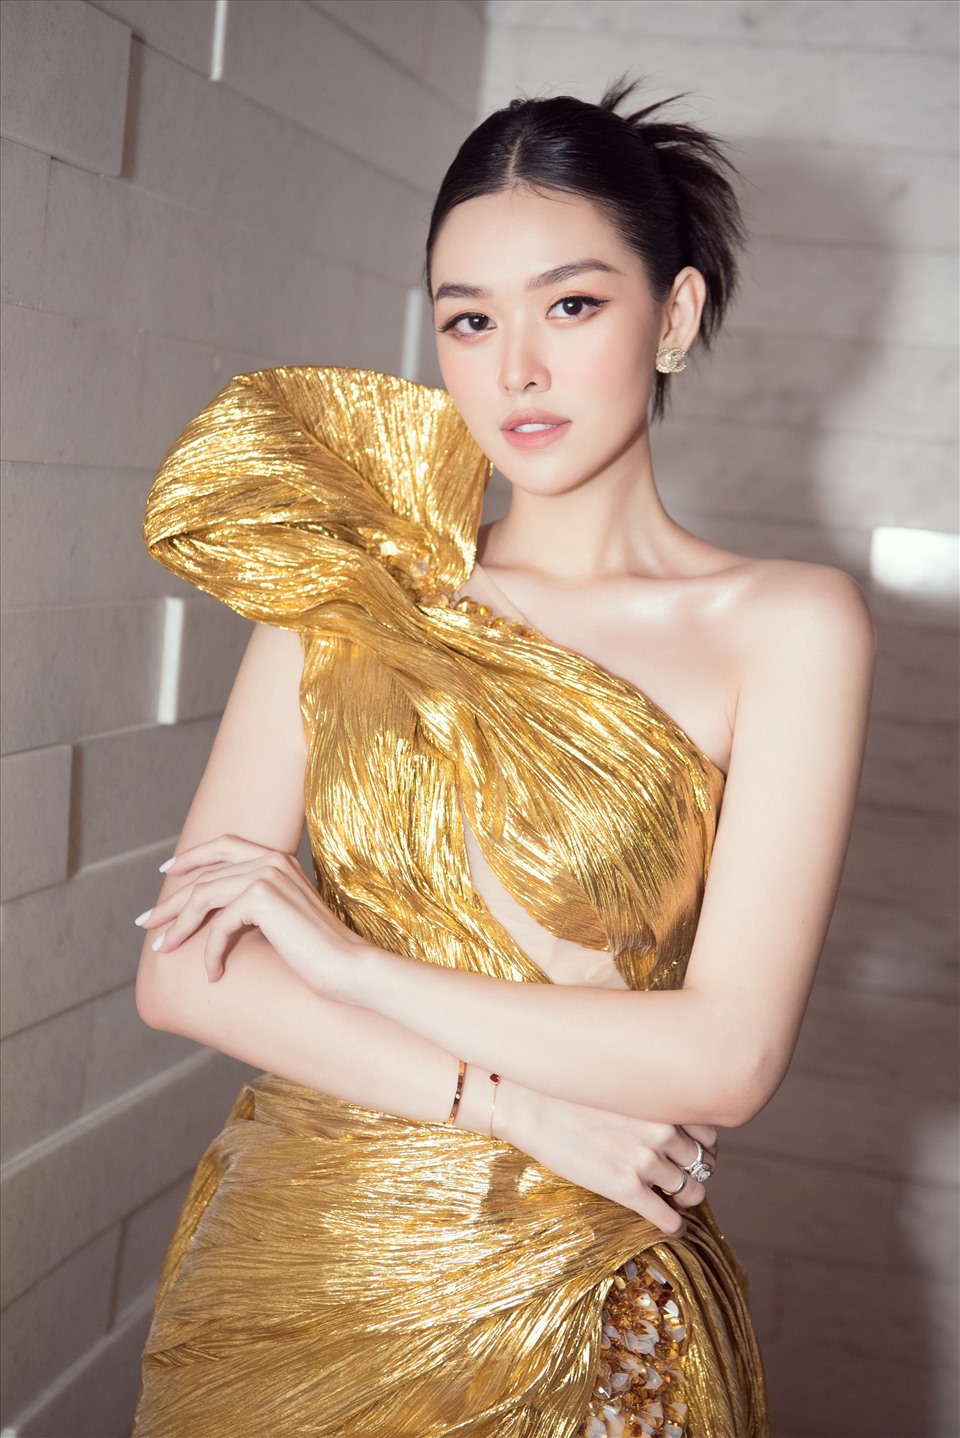 Trung thành với style ngọt ngào, Á hậu Tường San khoe vẻ đẹp thanh khiết với chiếc váy dạ hội ánh vàng. Sau khi sinh con đầu lòng ở tuổi 21, Á hậu Tường San ngày càng mặn mà nhan sắc.